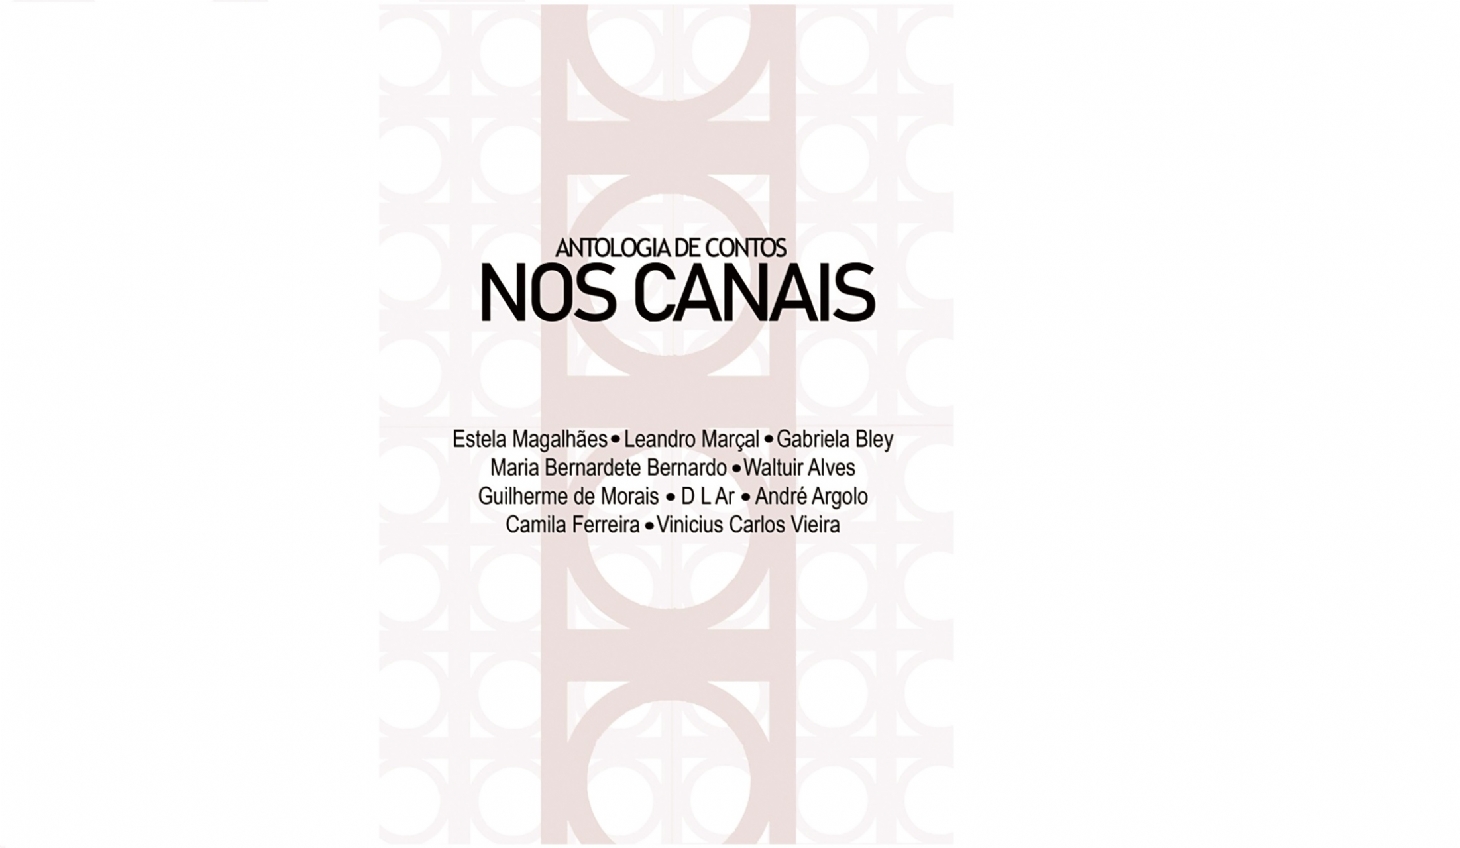 Escritores santistas lançam obra em referência aos canais | Jornal da Orla